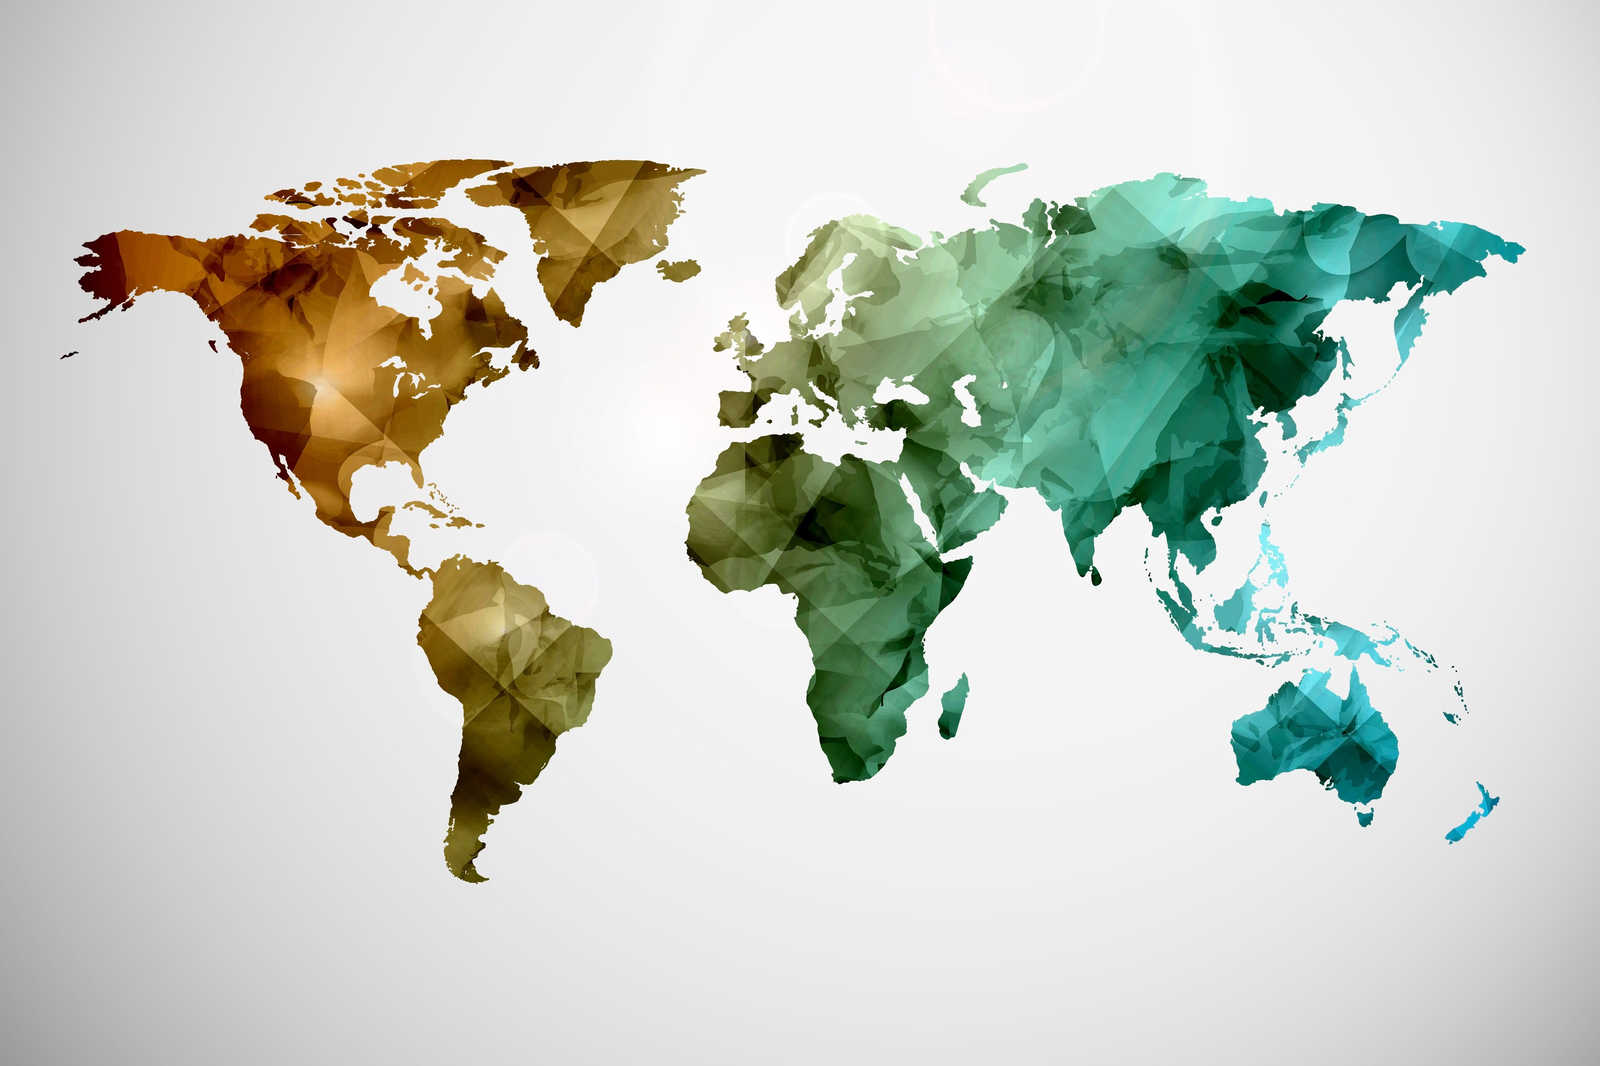             Leinwand mit Weltkarte aus grafischen Elementen | WorldGrafic 1 – 0,90 m x 0,60 m
        